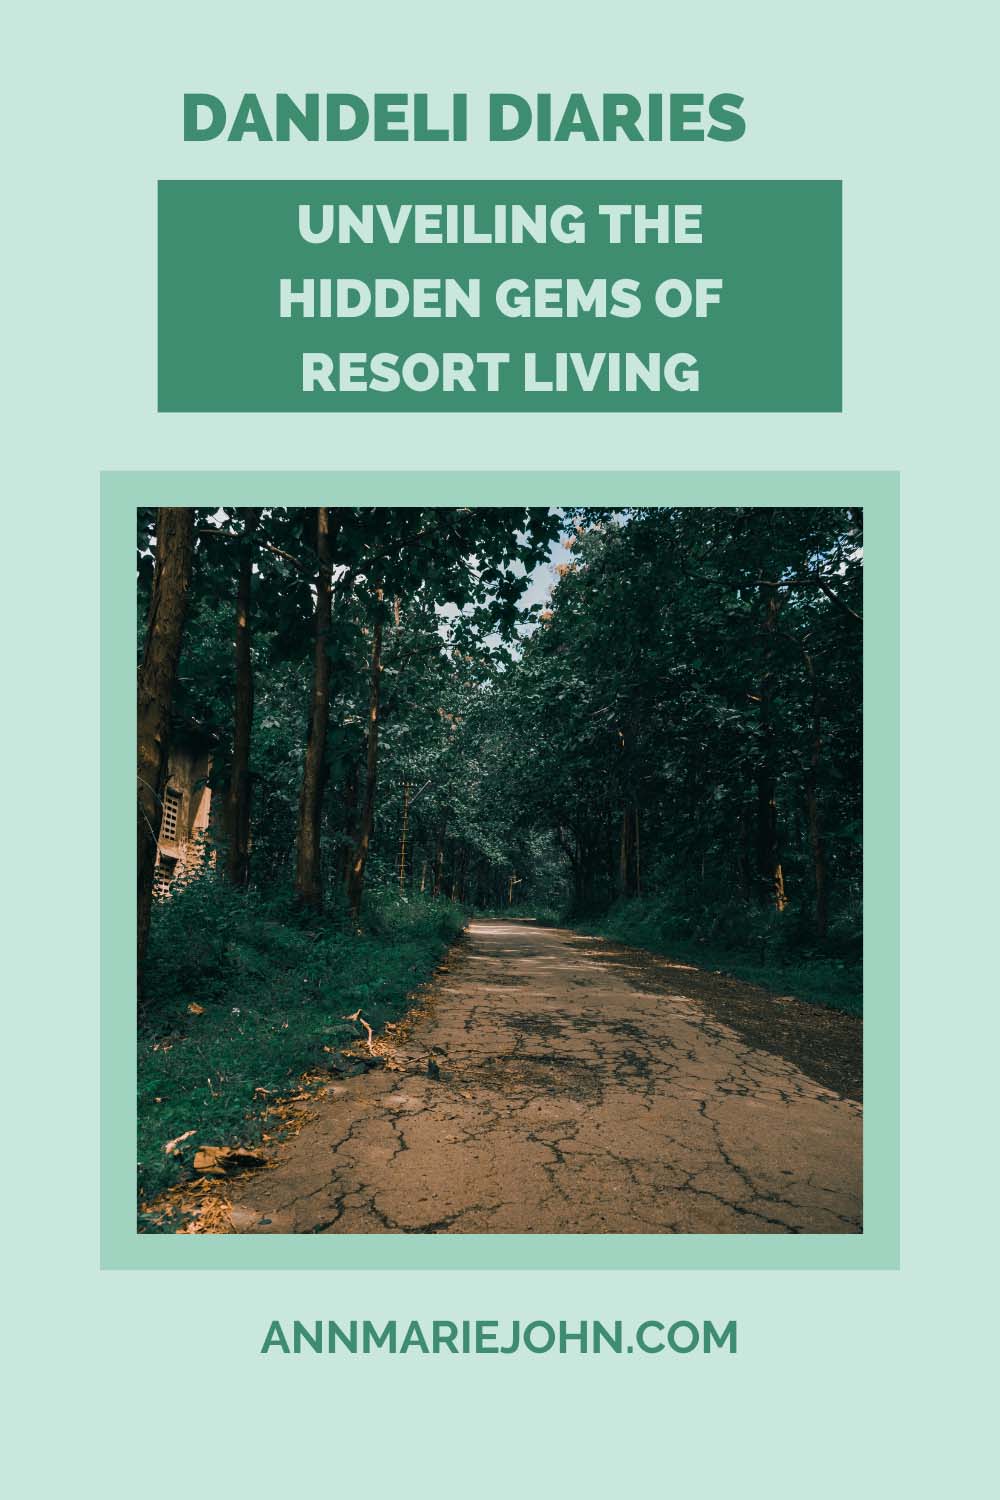 Dandeli Diaries: Unveiling the Hidden Gems of Resort Living